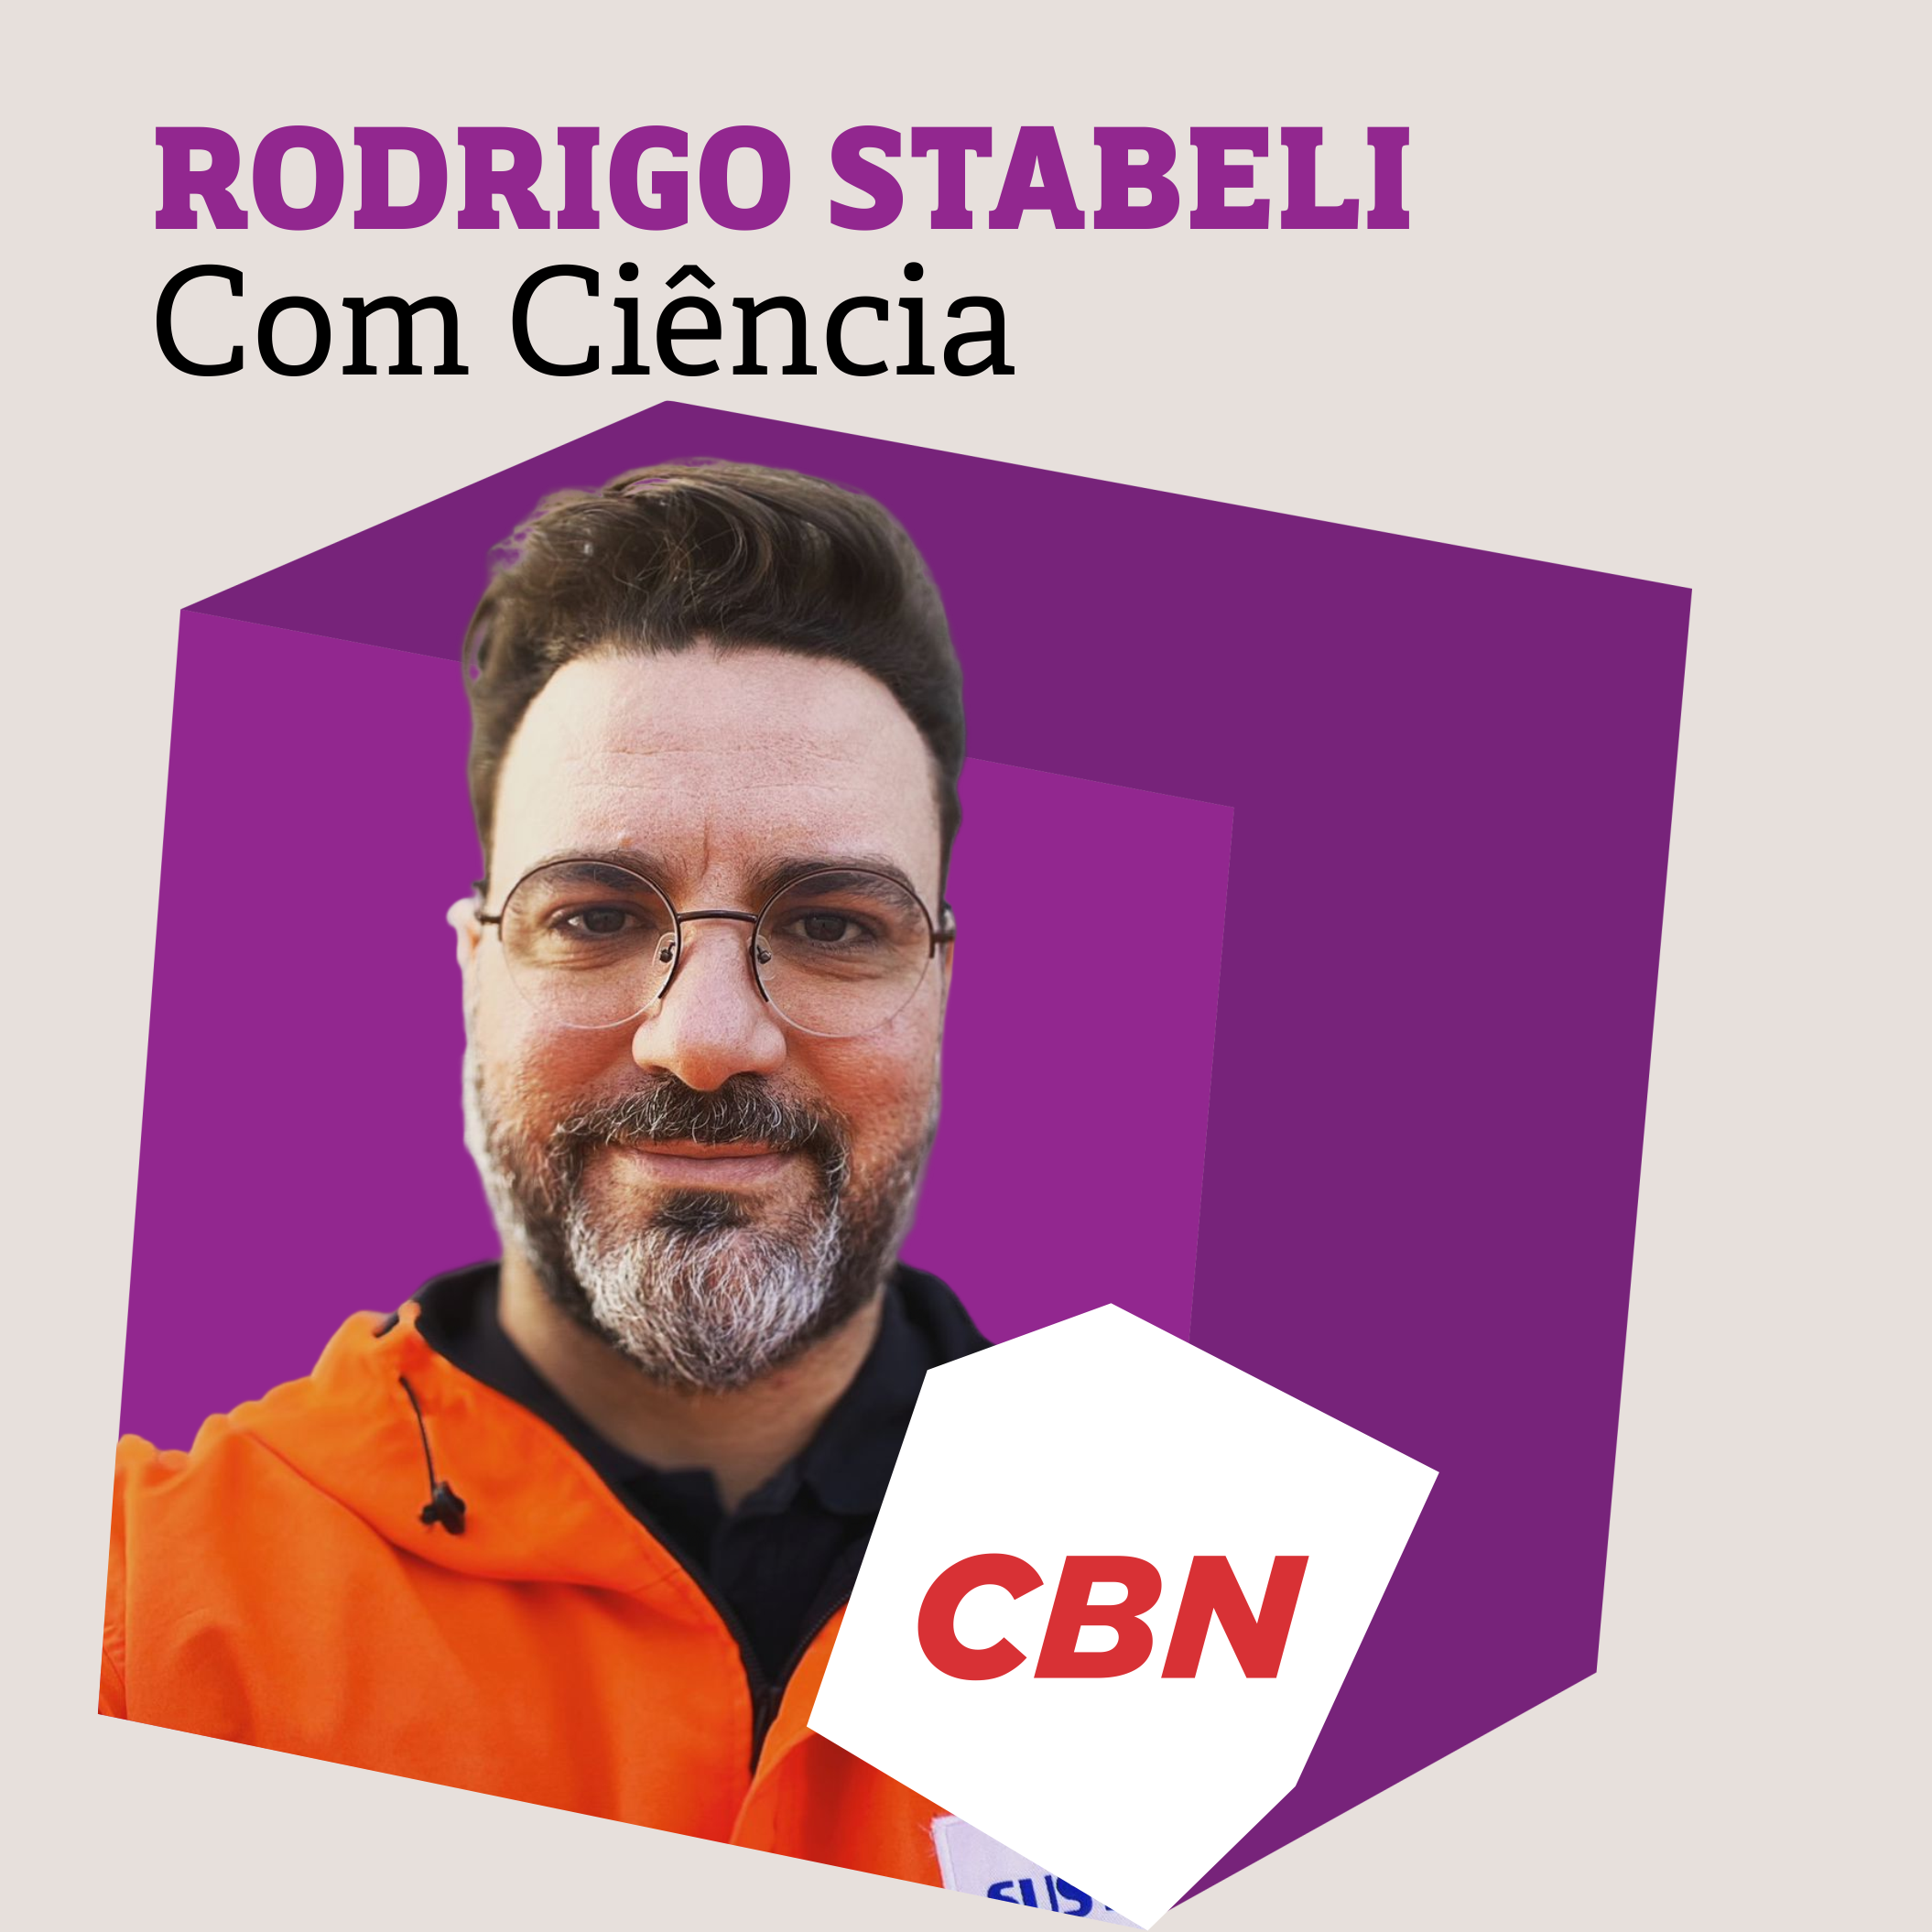 Rodrigo Stabeli - CBN Com Ciência